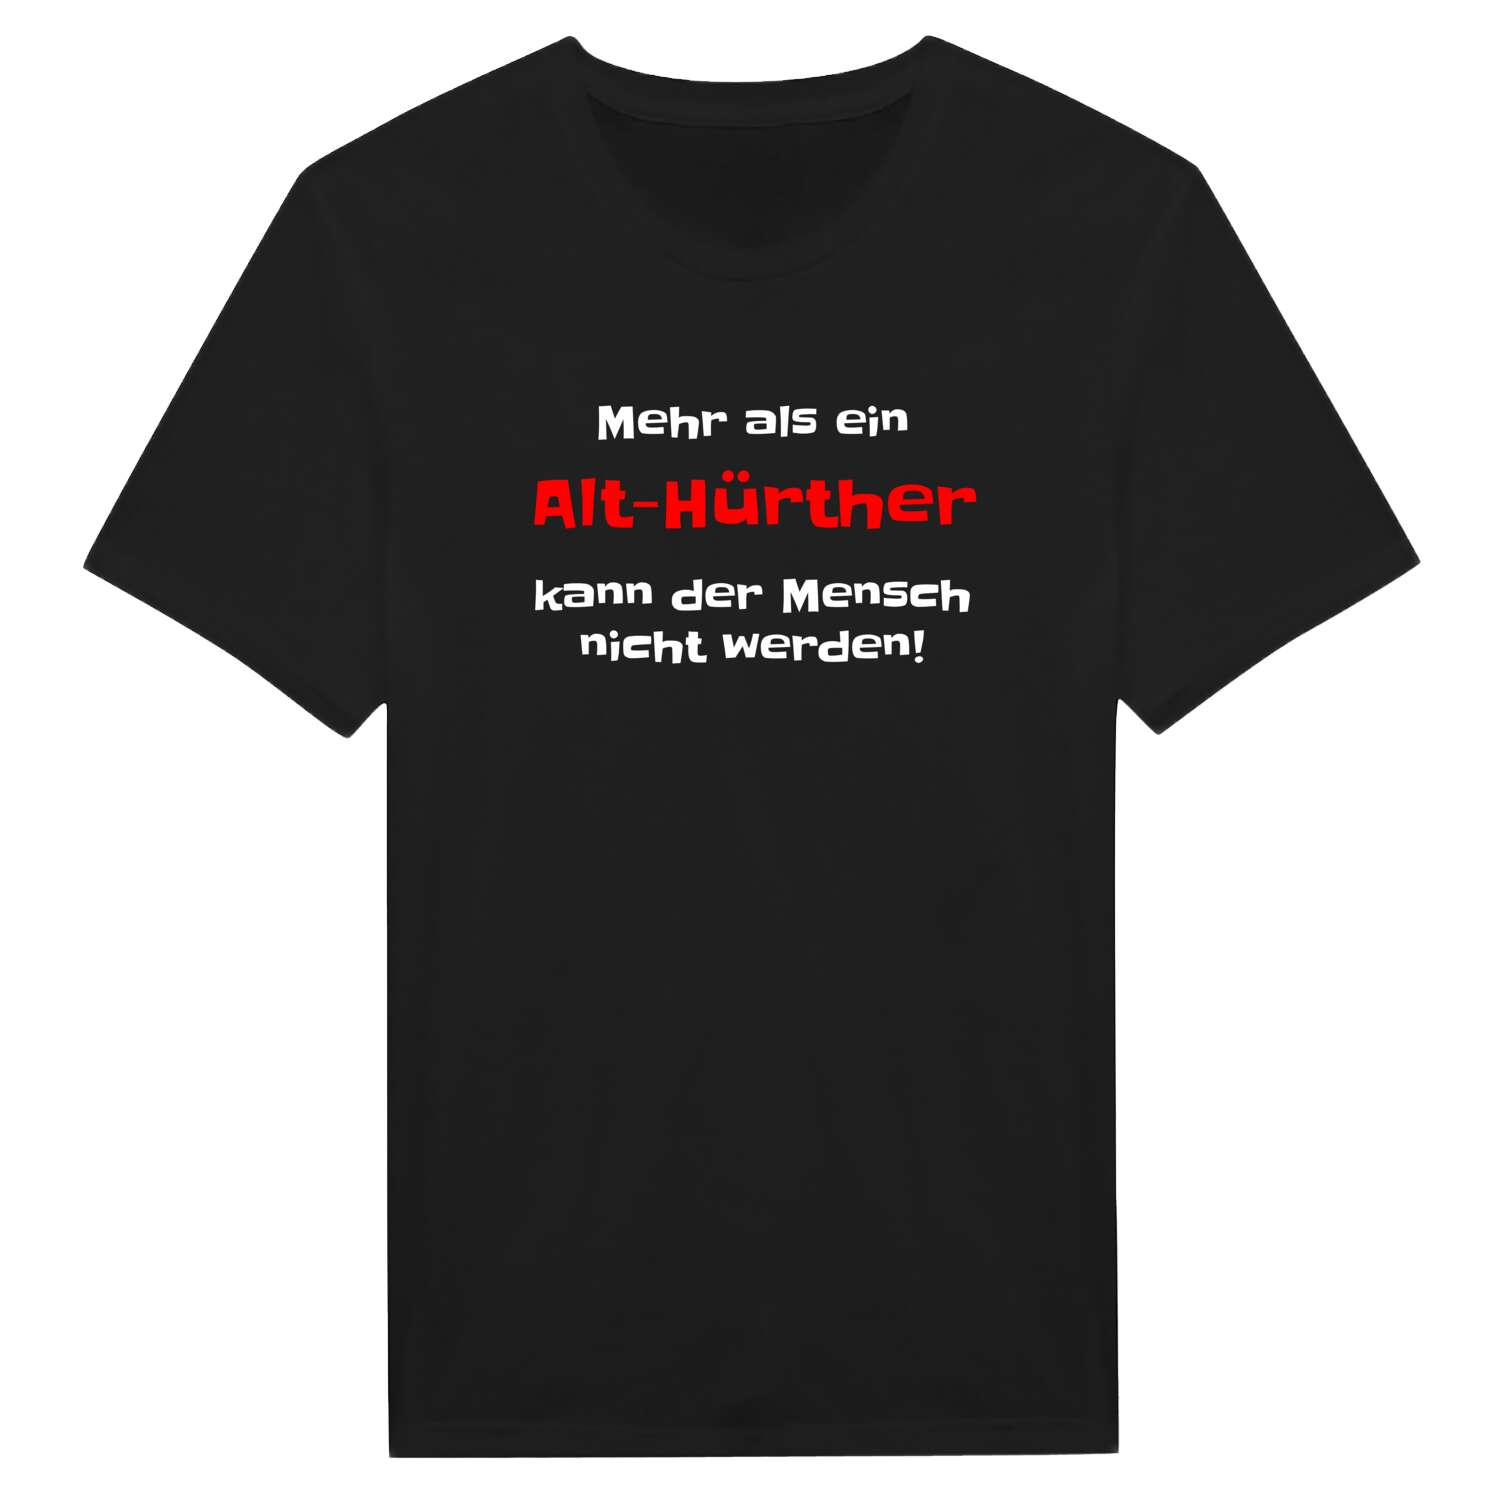 Alt-Hürth T-Shirt »Mehr als ein«